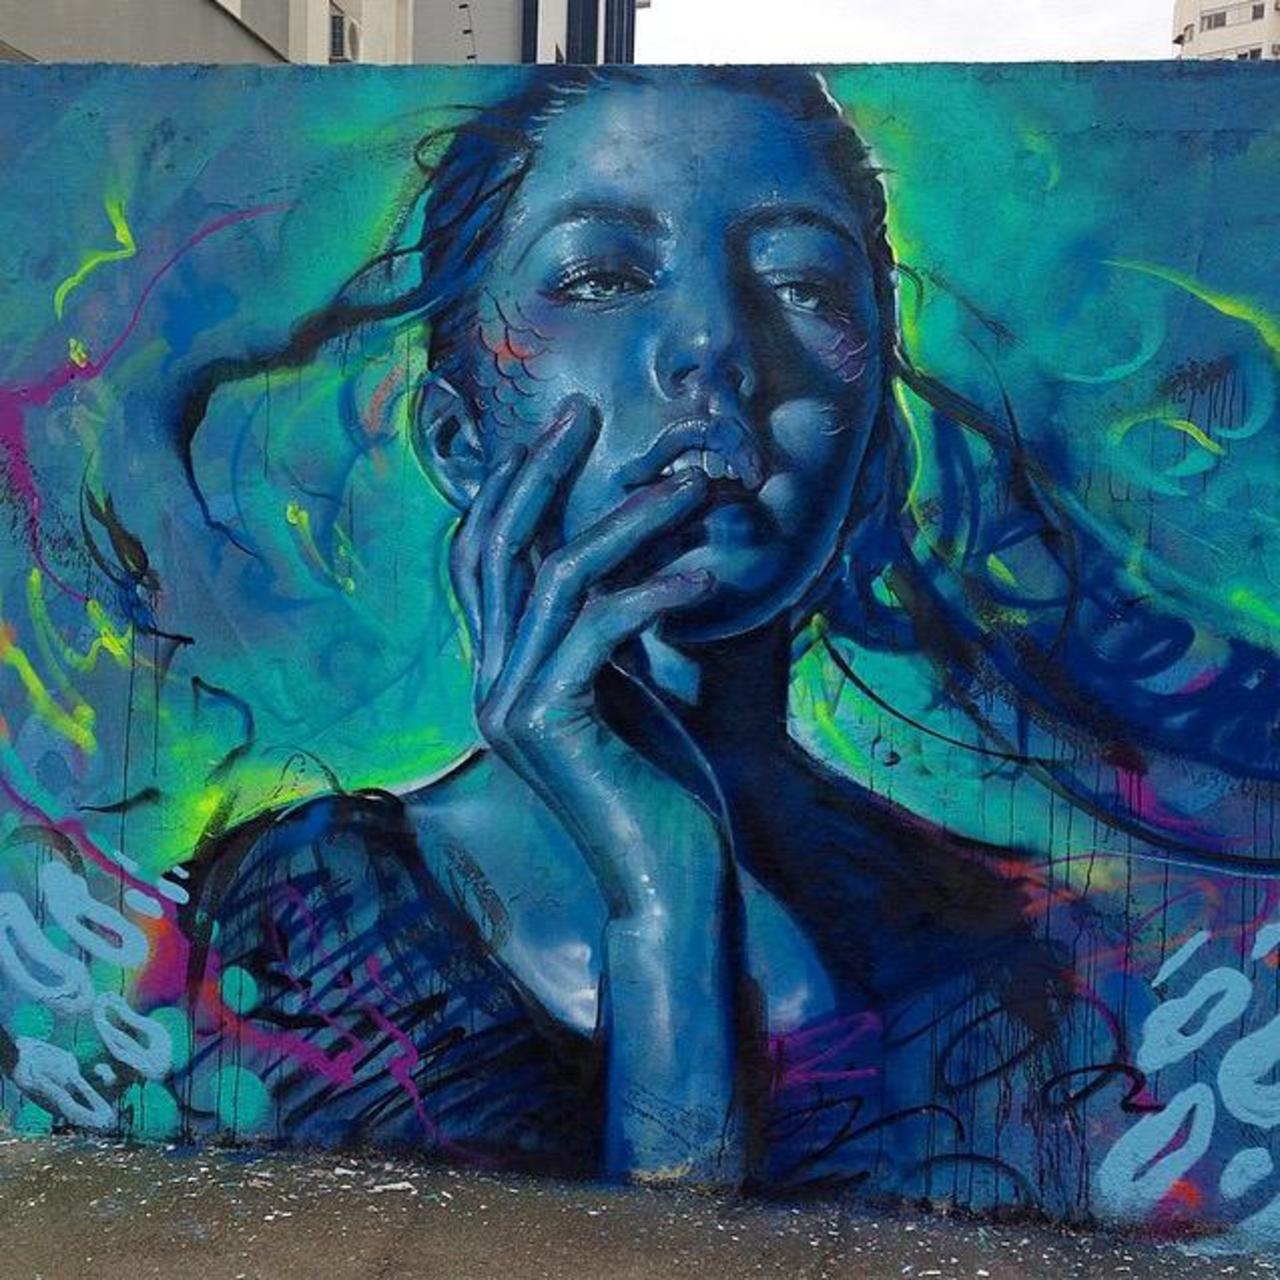 Thiago Valdi new Street Art piece titled 'Day Dreamer'

#art #mural #graffiti #streetart http://t.co/3UodbQm48I